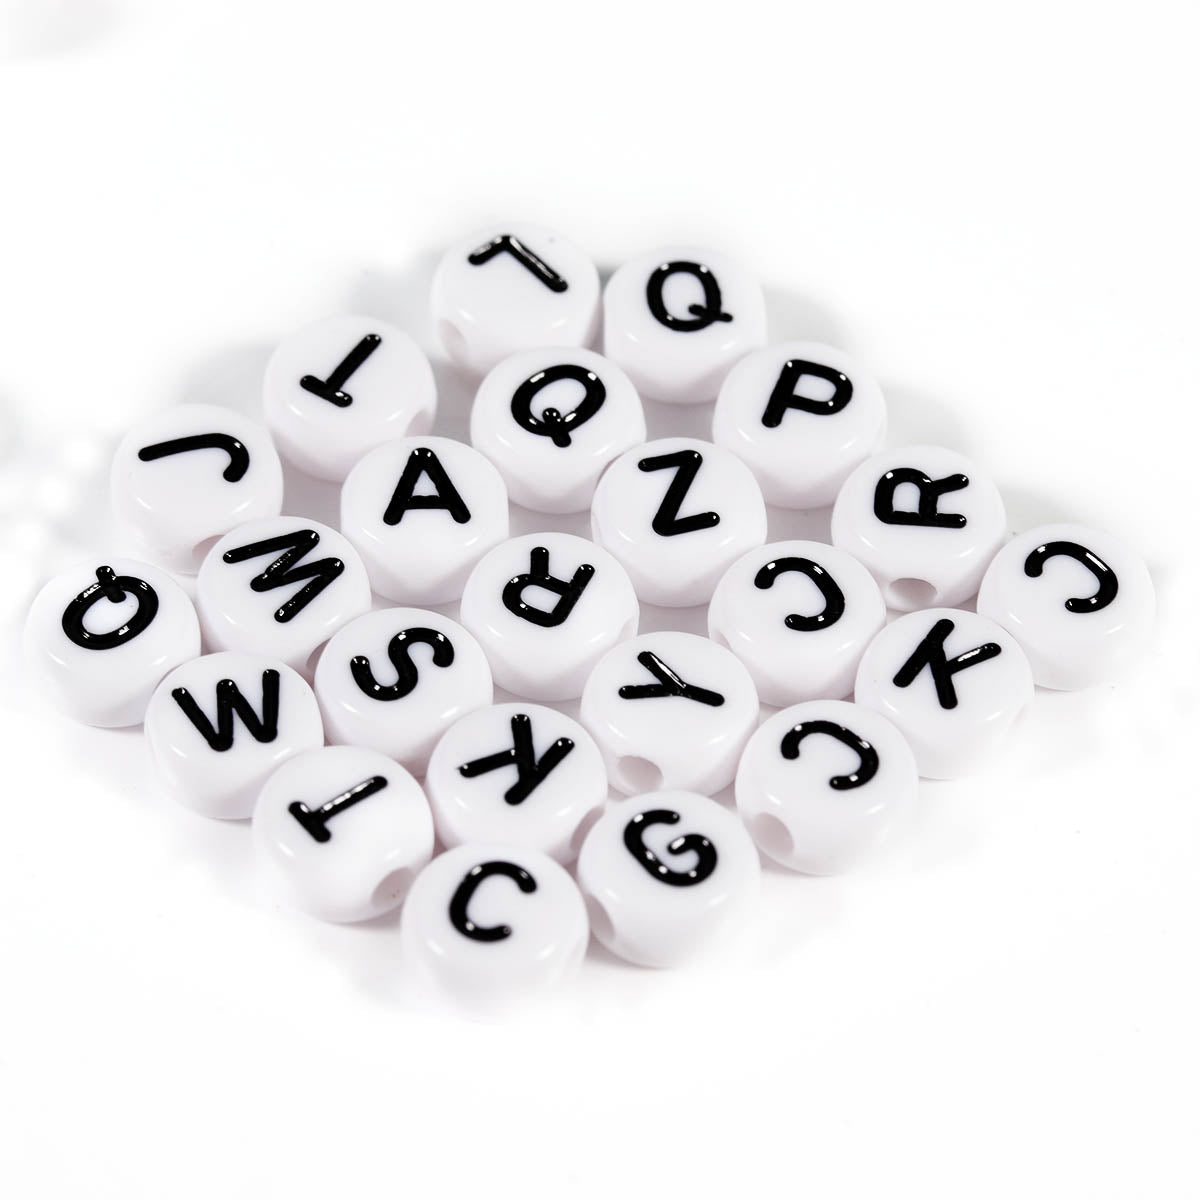 100 pz letras blanco con negro, cuentas para pulseras, letras para  bisuteria, abalorios